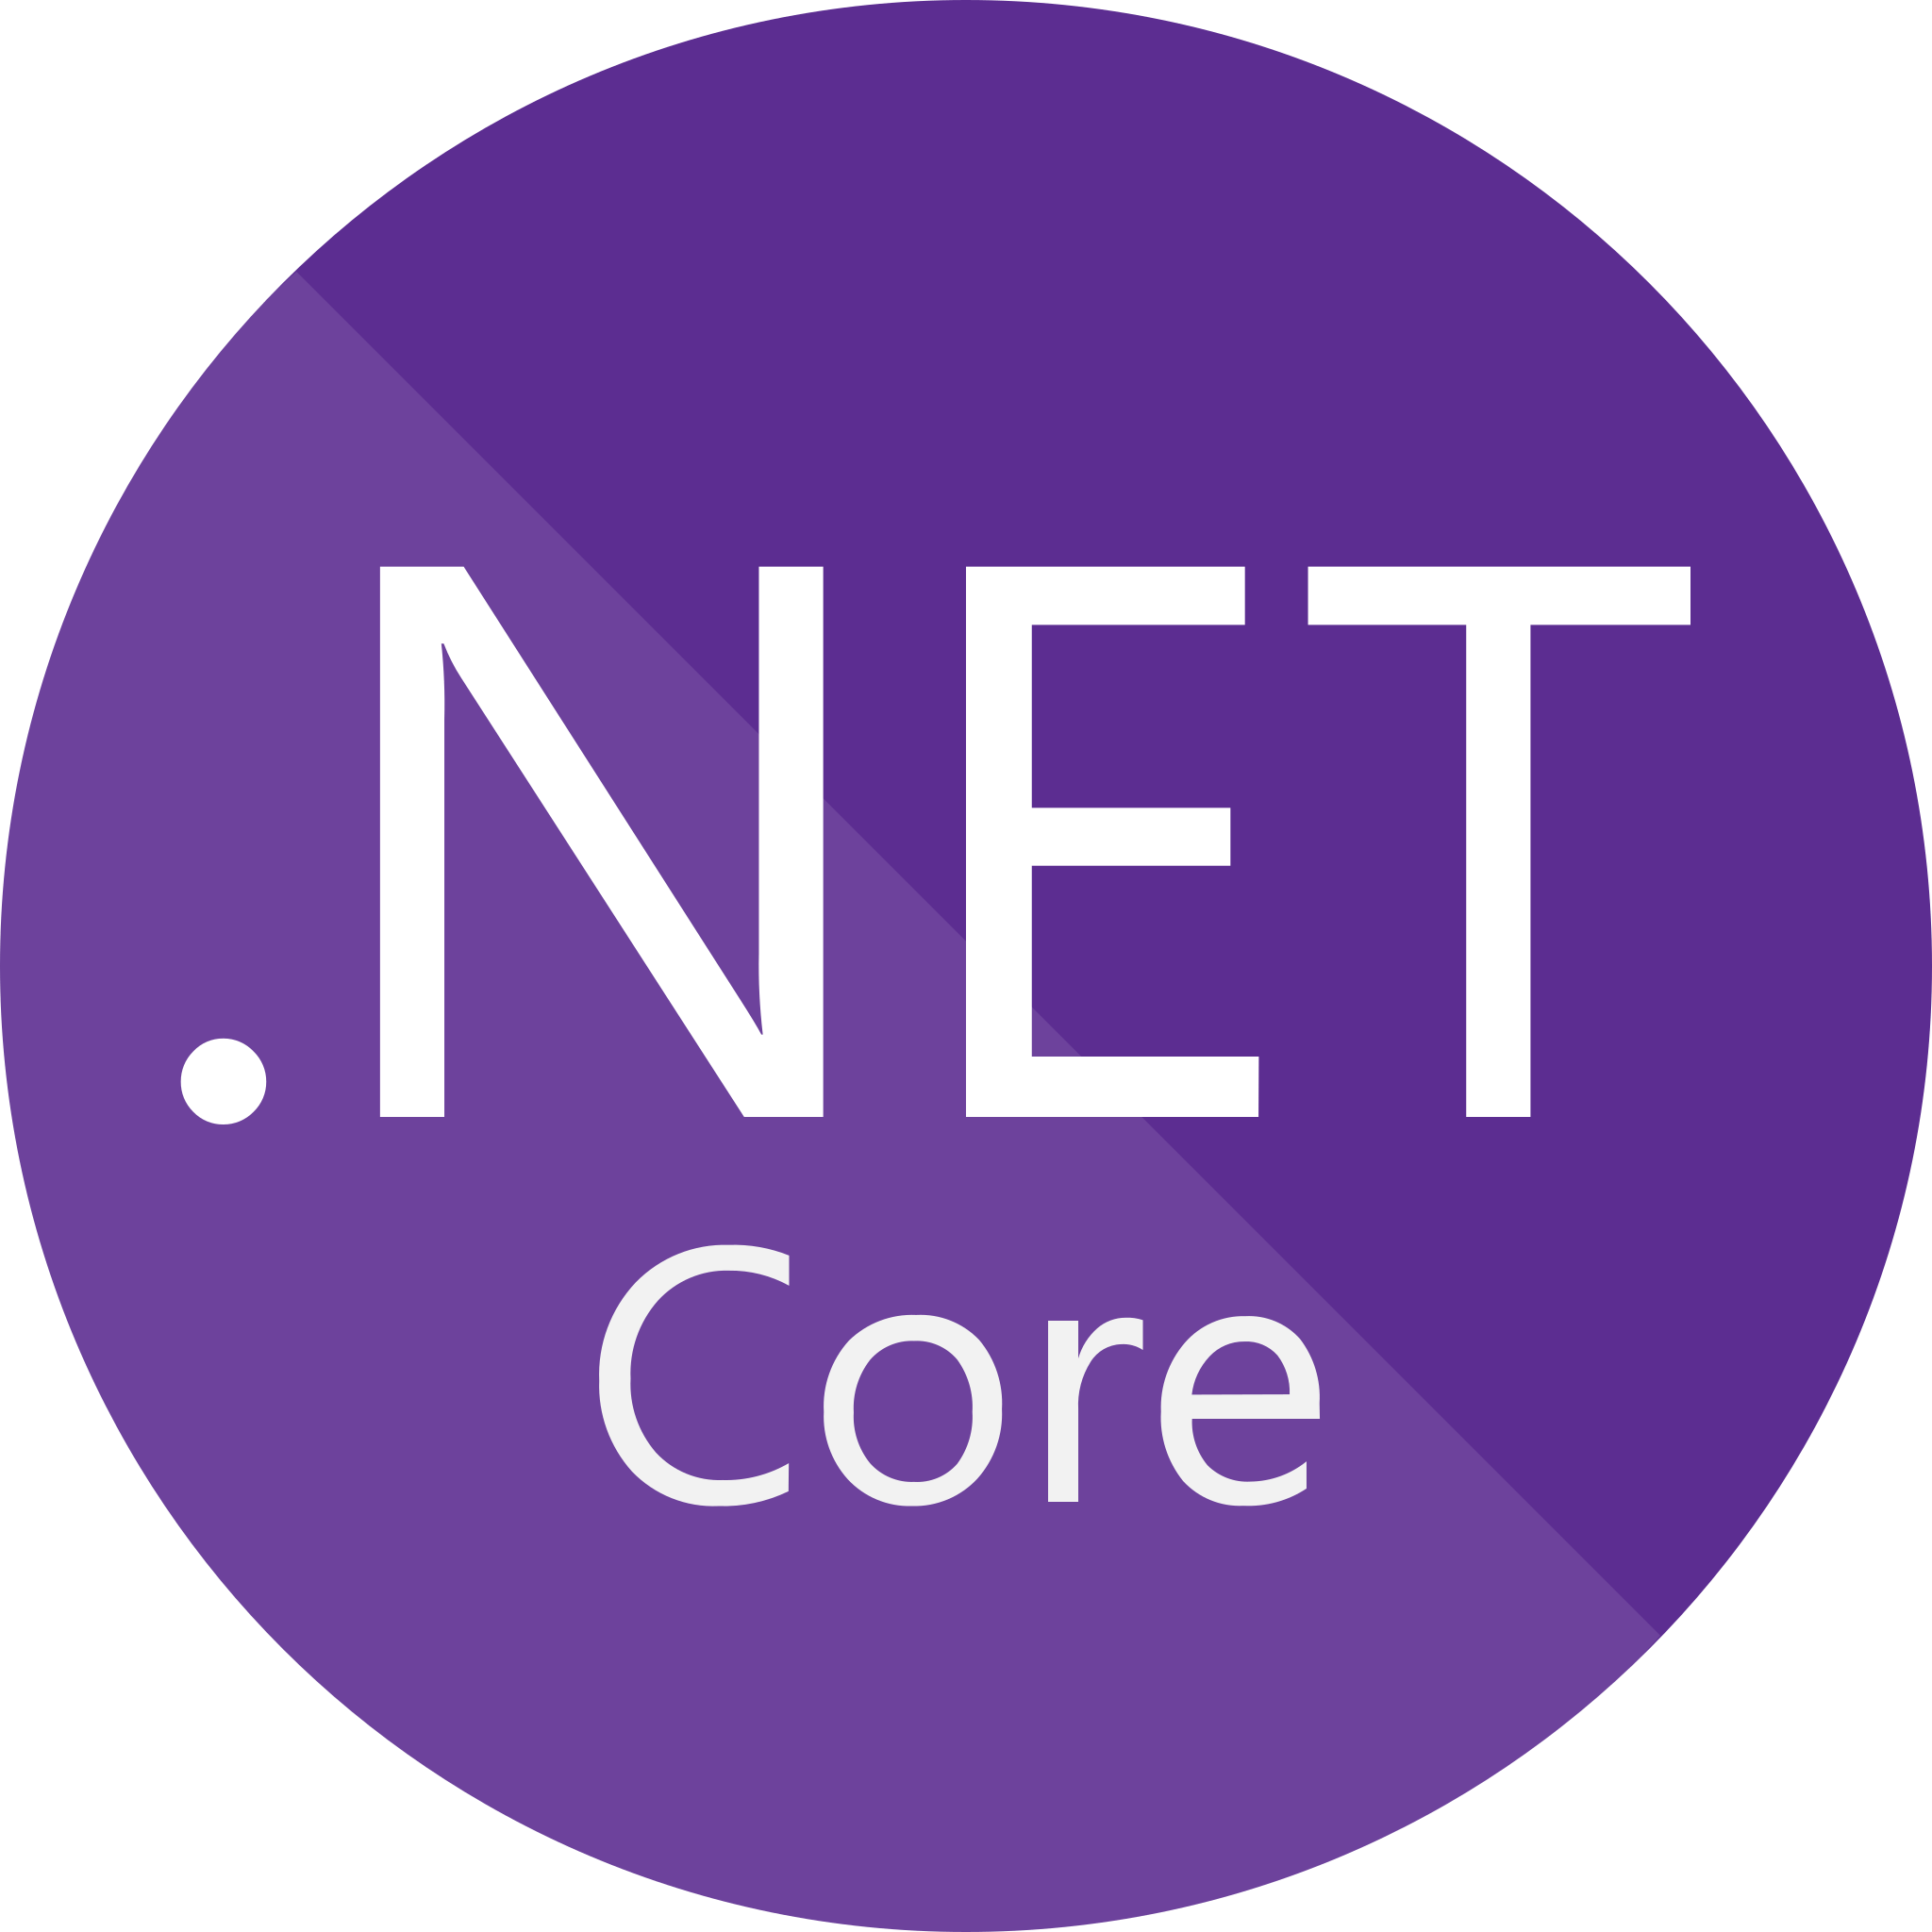 net core